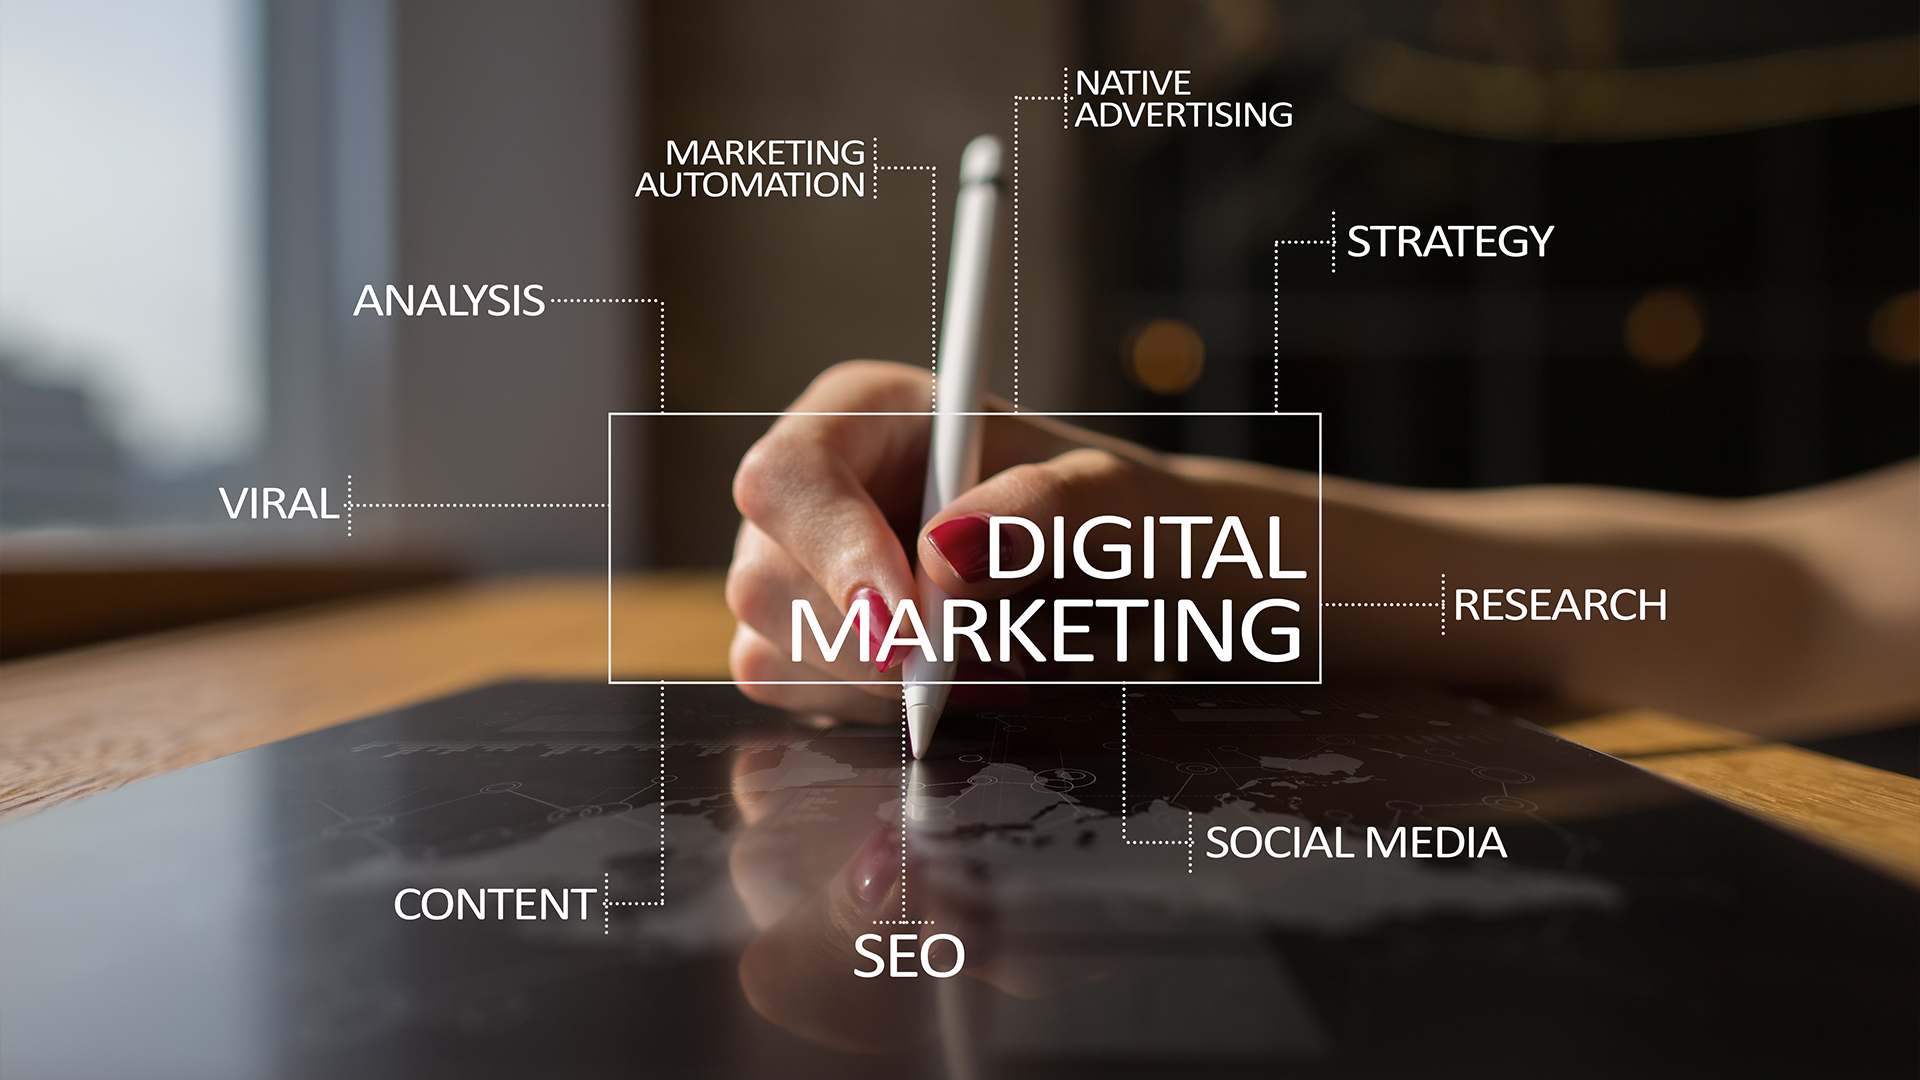 Digital marketing strategist jobs